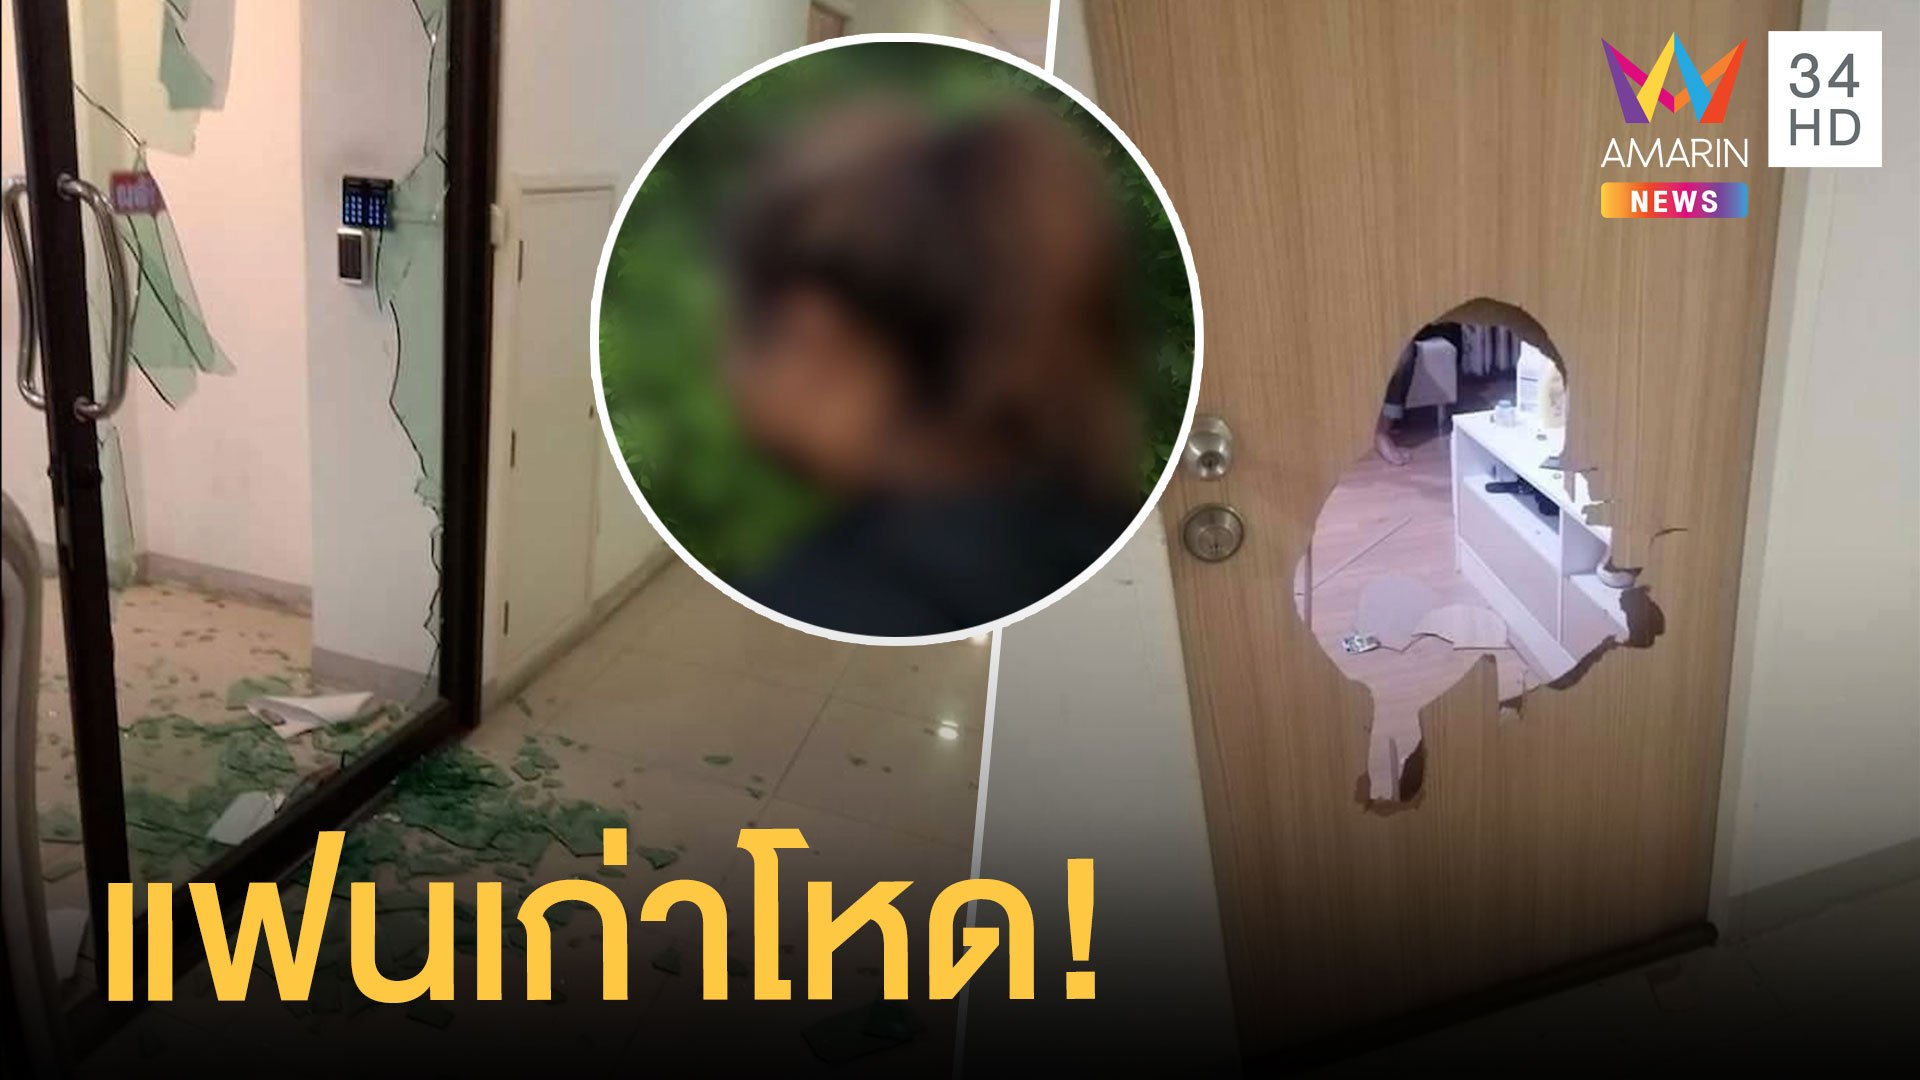 แฟนเก่าโหดยกพวกบุกพังคอนโดทำร้ายสาว 19 โดนไป 3 ข้อหา | ข่าวเที่ยงอมรินทร์ | 26 ม.ค. 64 | AMARIN TVHD34